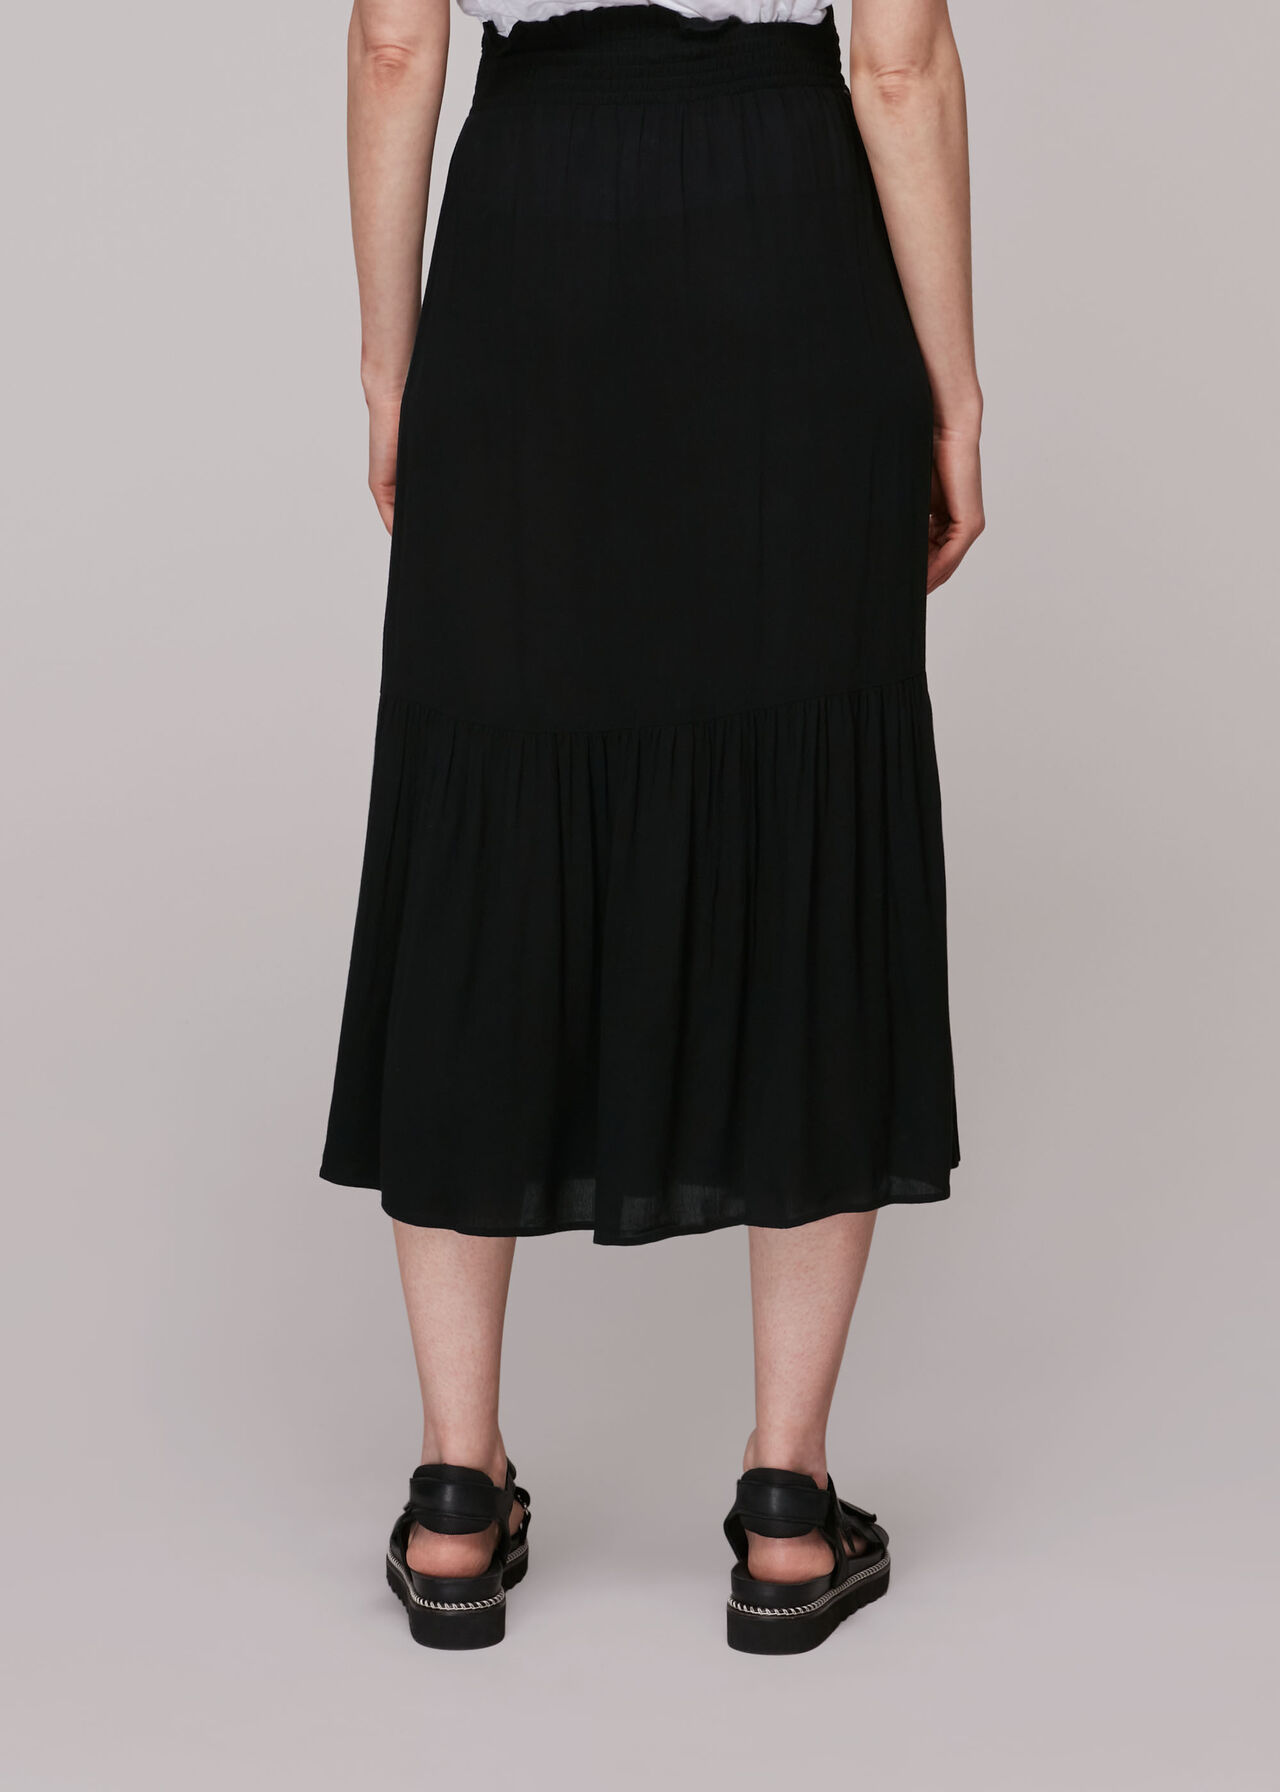 Smocked Waist Skirt Black